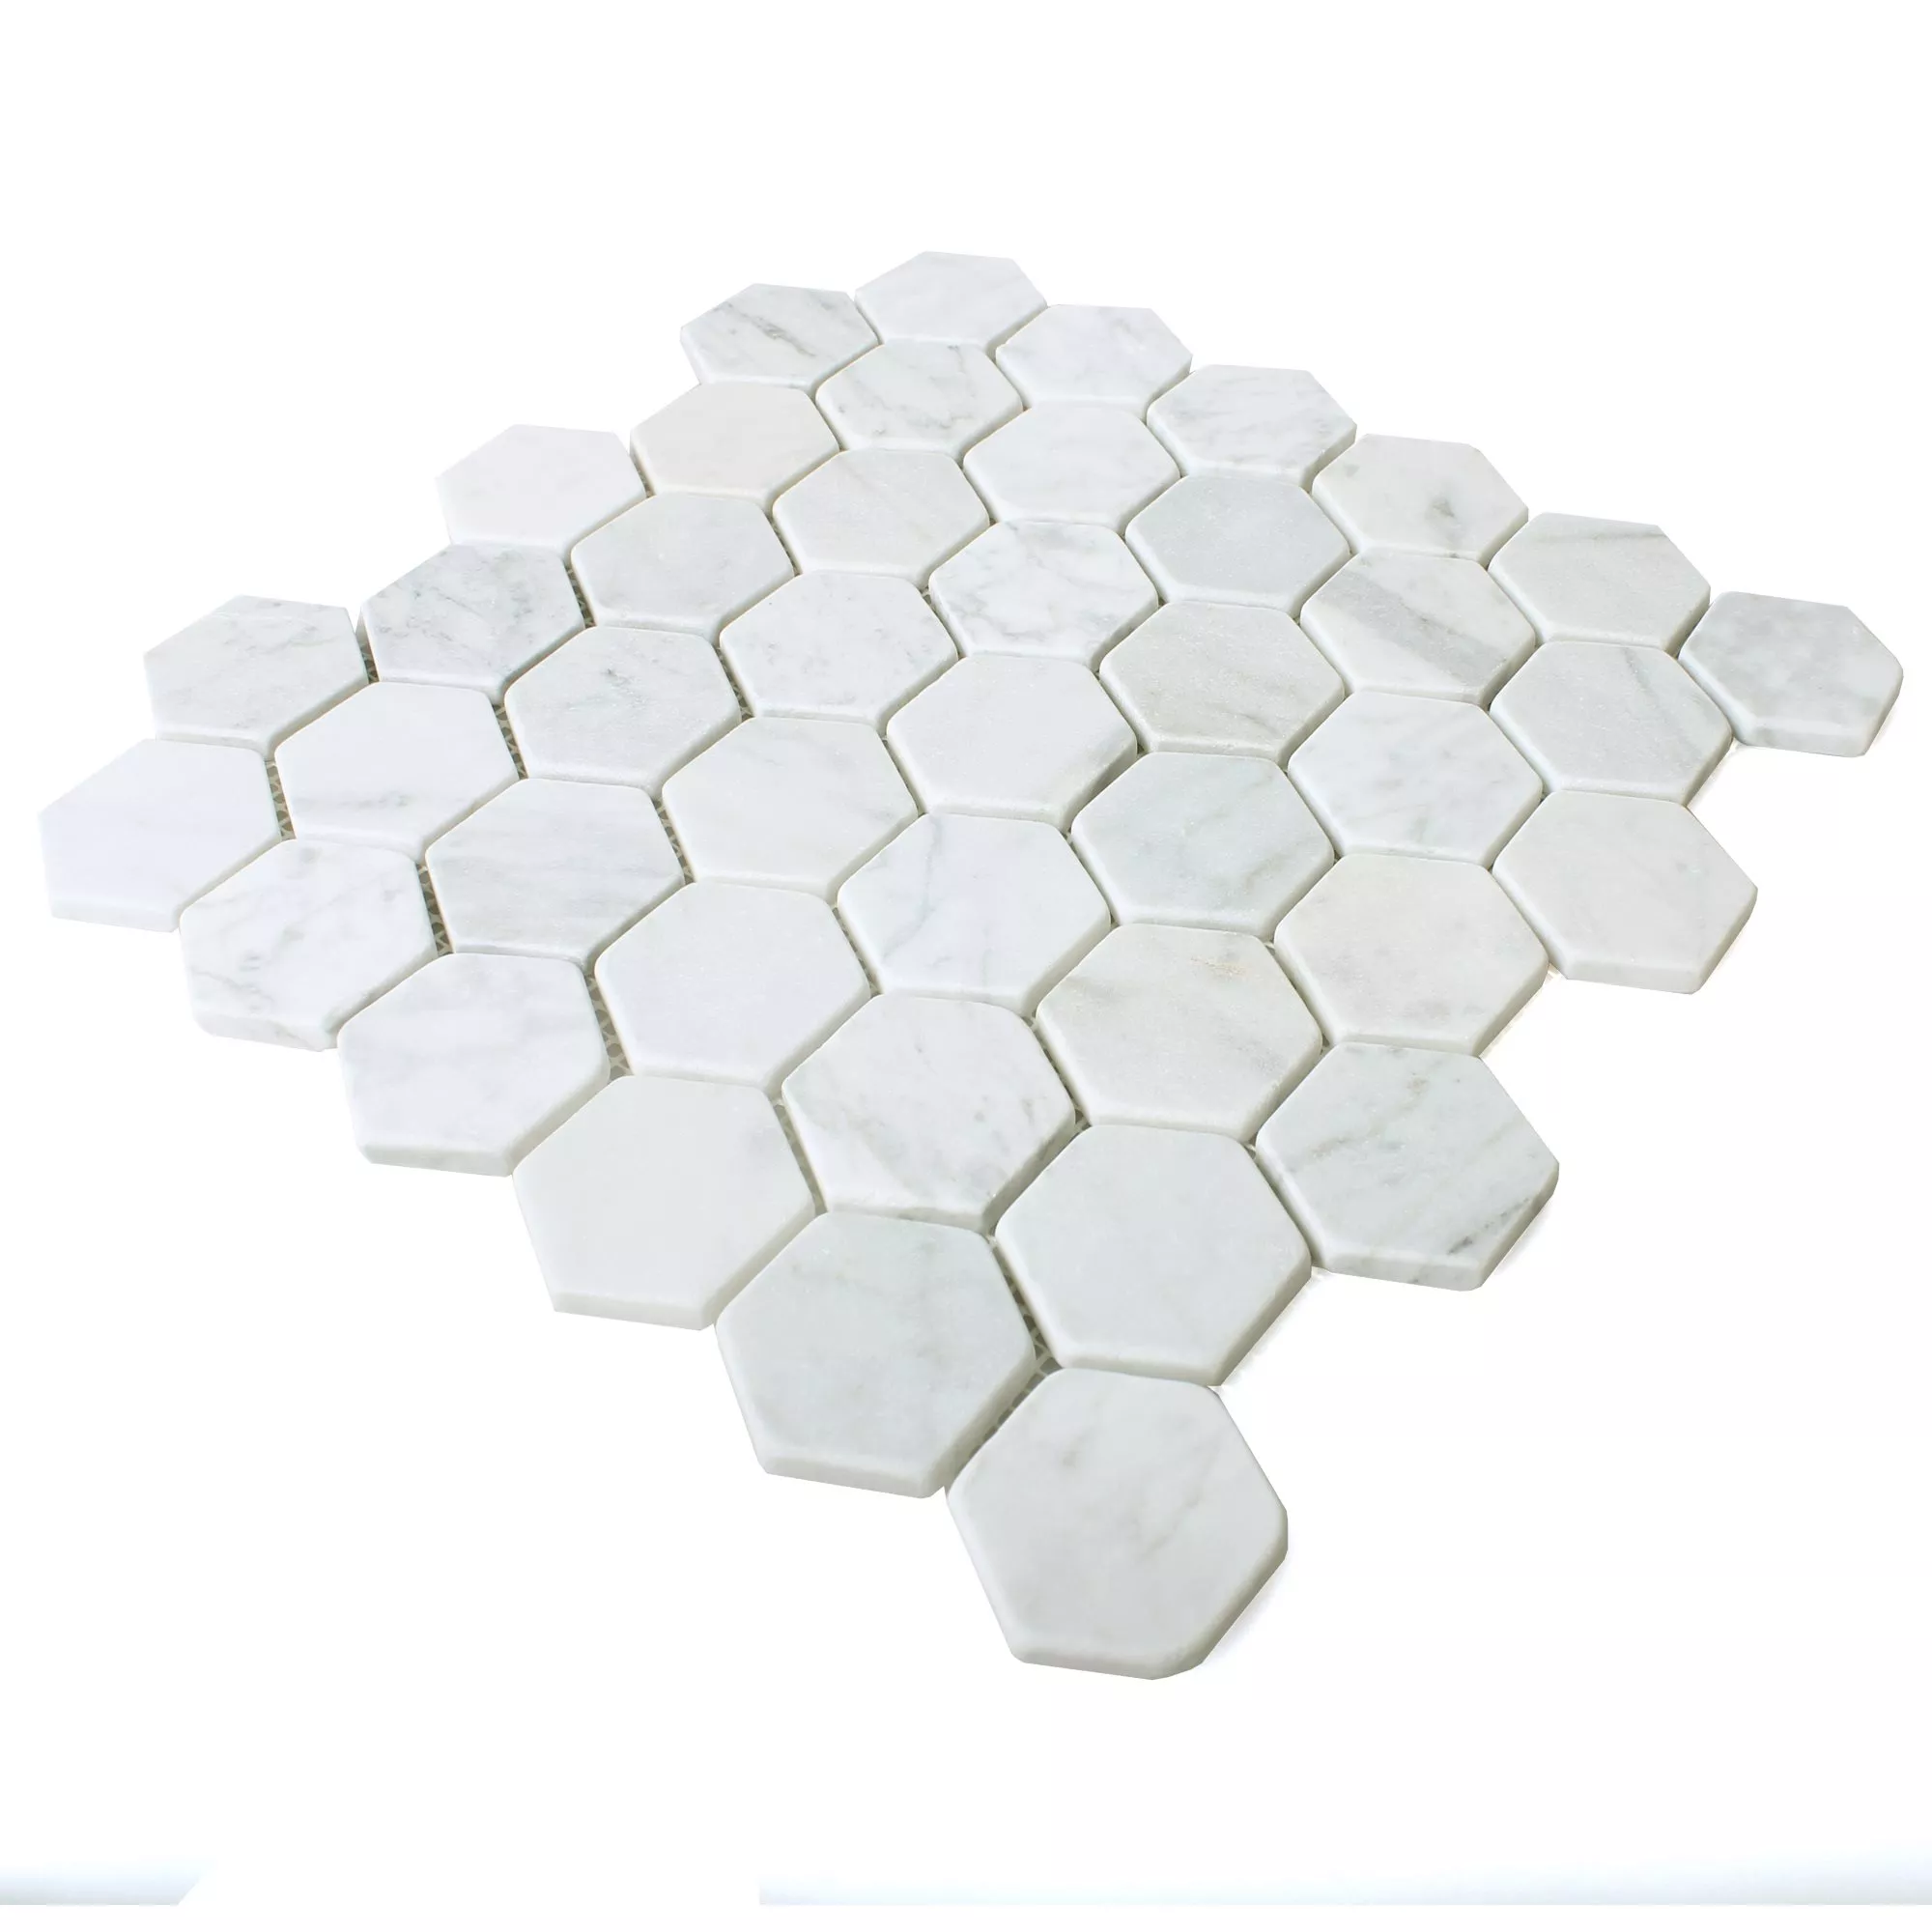 Mosaikfliesen Marmor Wutach Hexagon Weiss Carrara